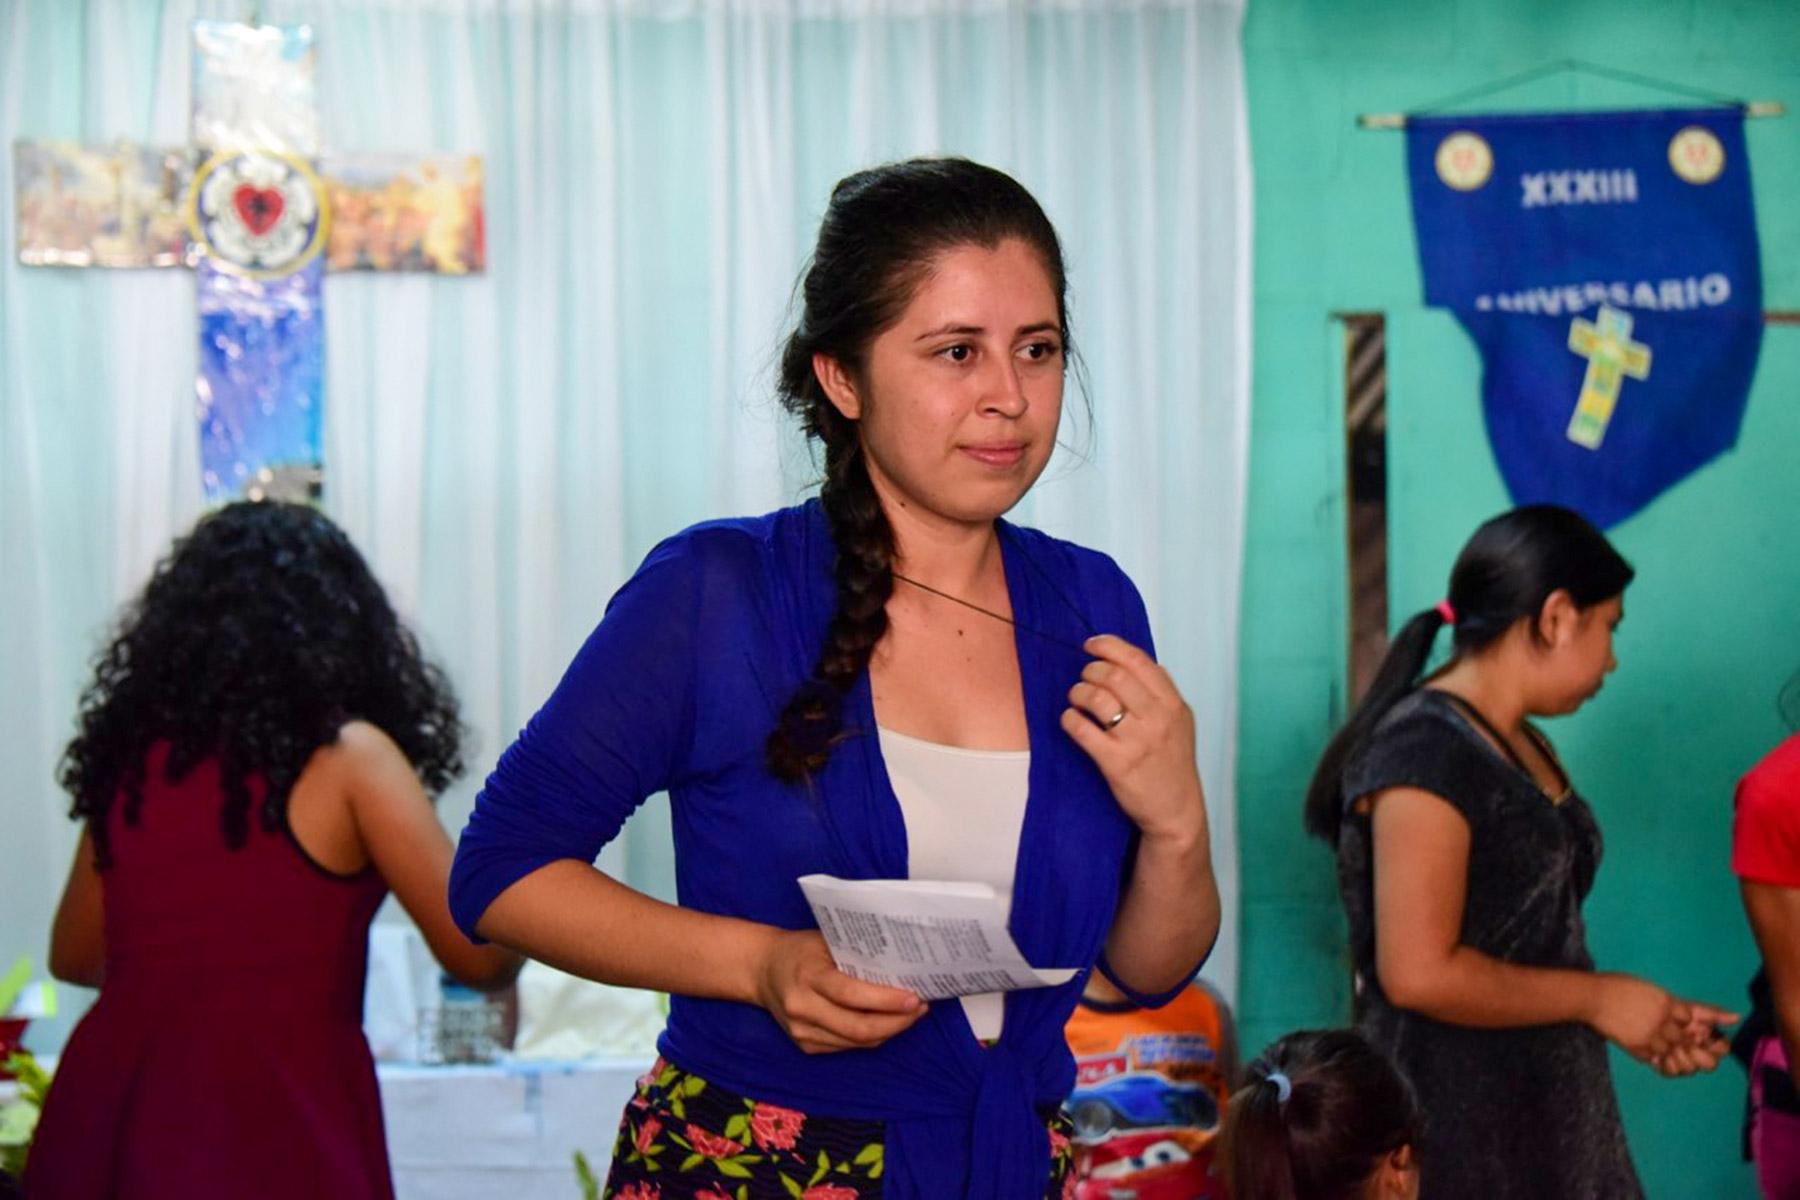 Nach ihrer Ausbildung zur Friedensbotschafterin im Jahr 2019 haben Oneyda Fuentes und andere Jugendliche in El Salvador Einkehrtage zum Thema Friedensarbeit in ihrem Umfeld organisiert. Foto: Chris Manke